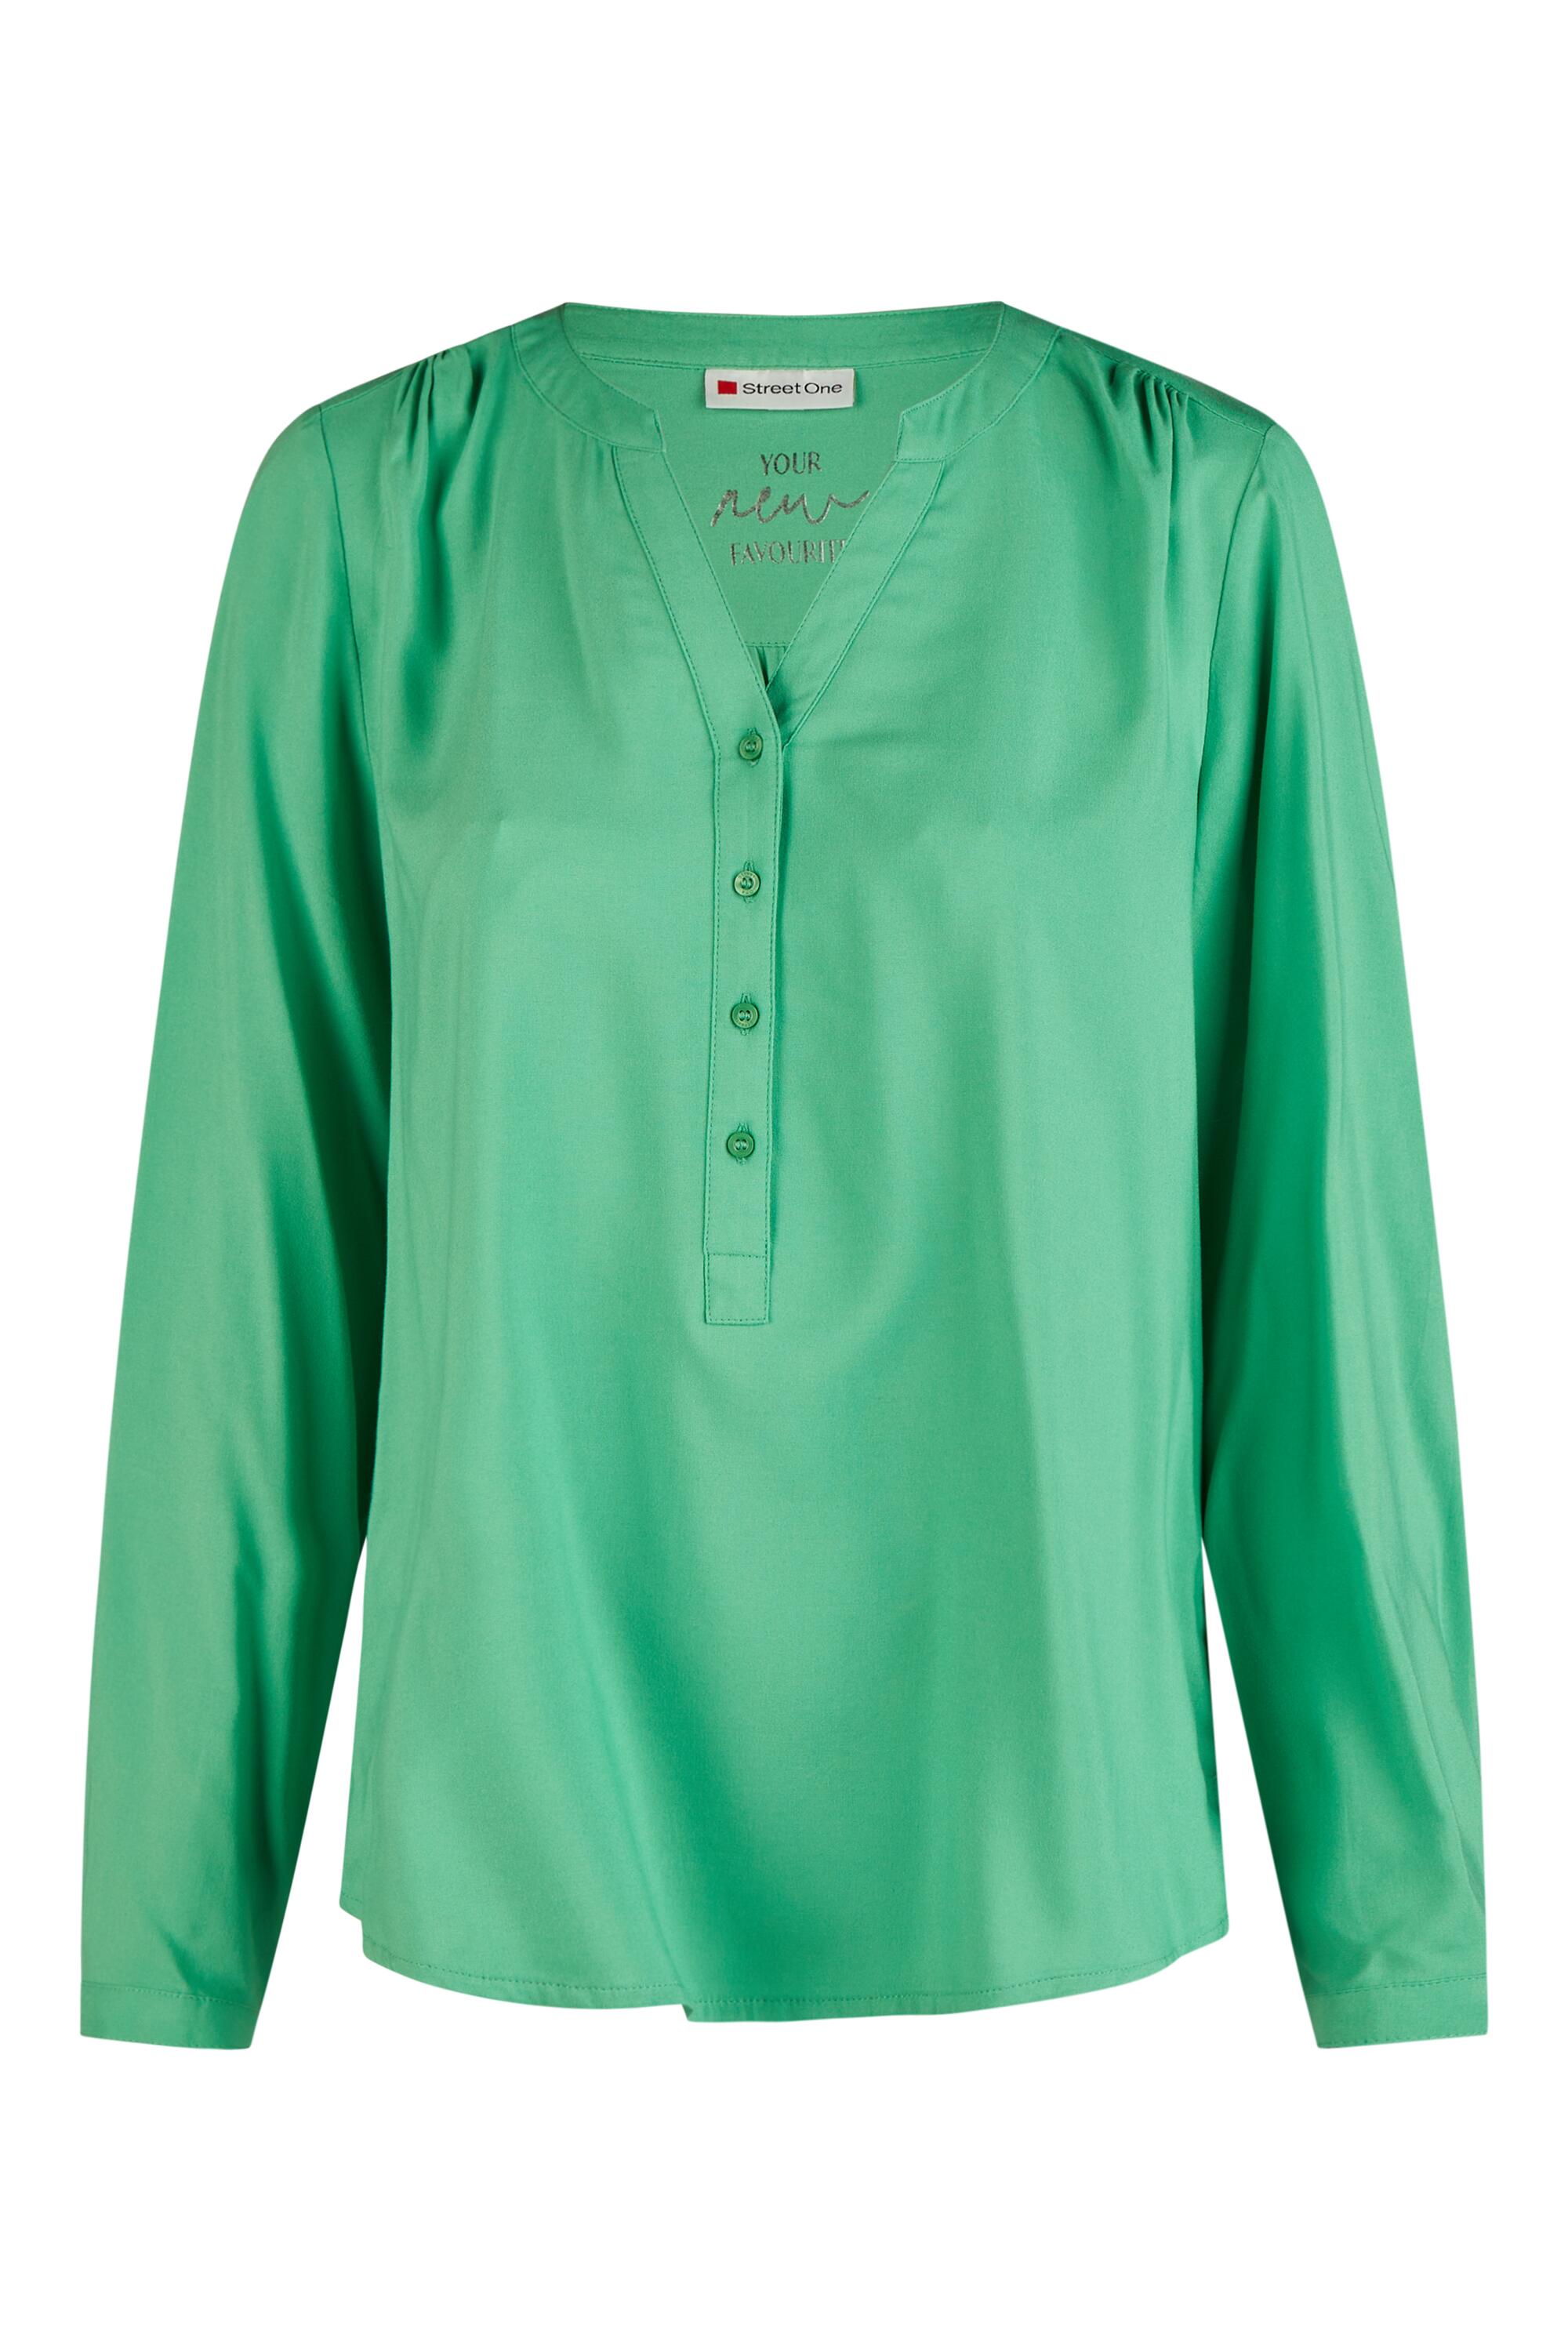 Shirtbluse von | I0134963-6 One | Street 46 grün 